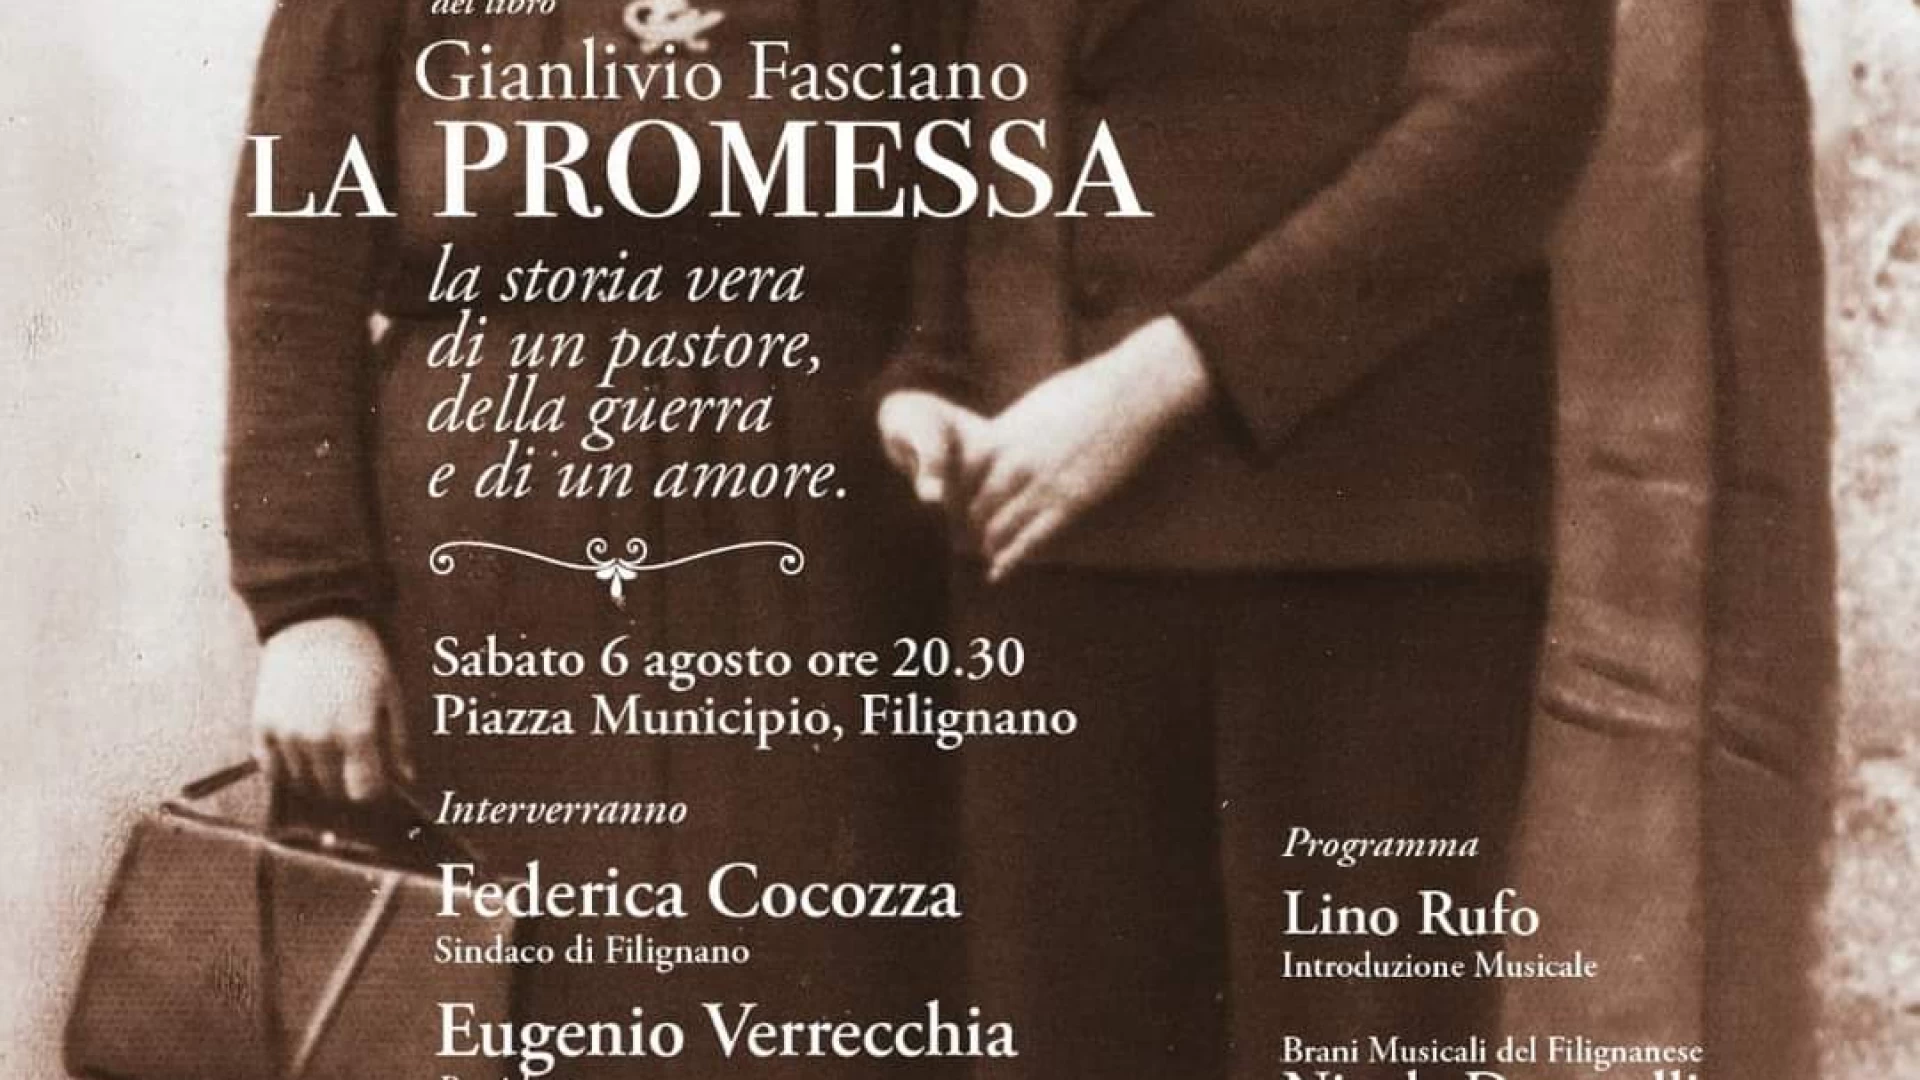 La Promessa”, romanzo di Gianlivio Fasciano, in scena a Filignano il 6 agosto 2022. 